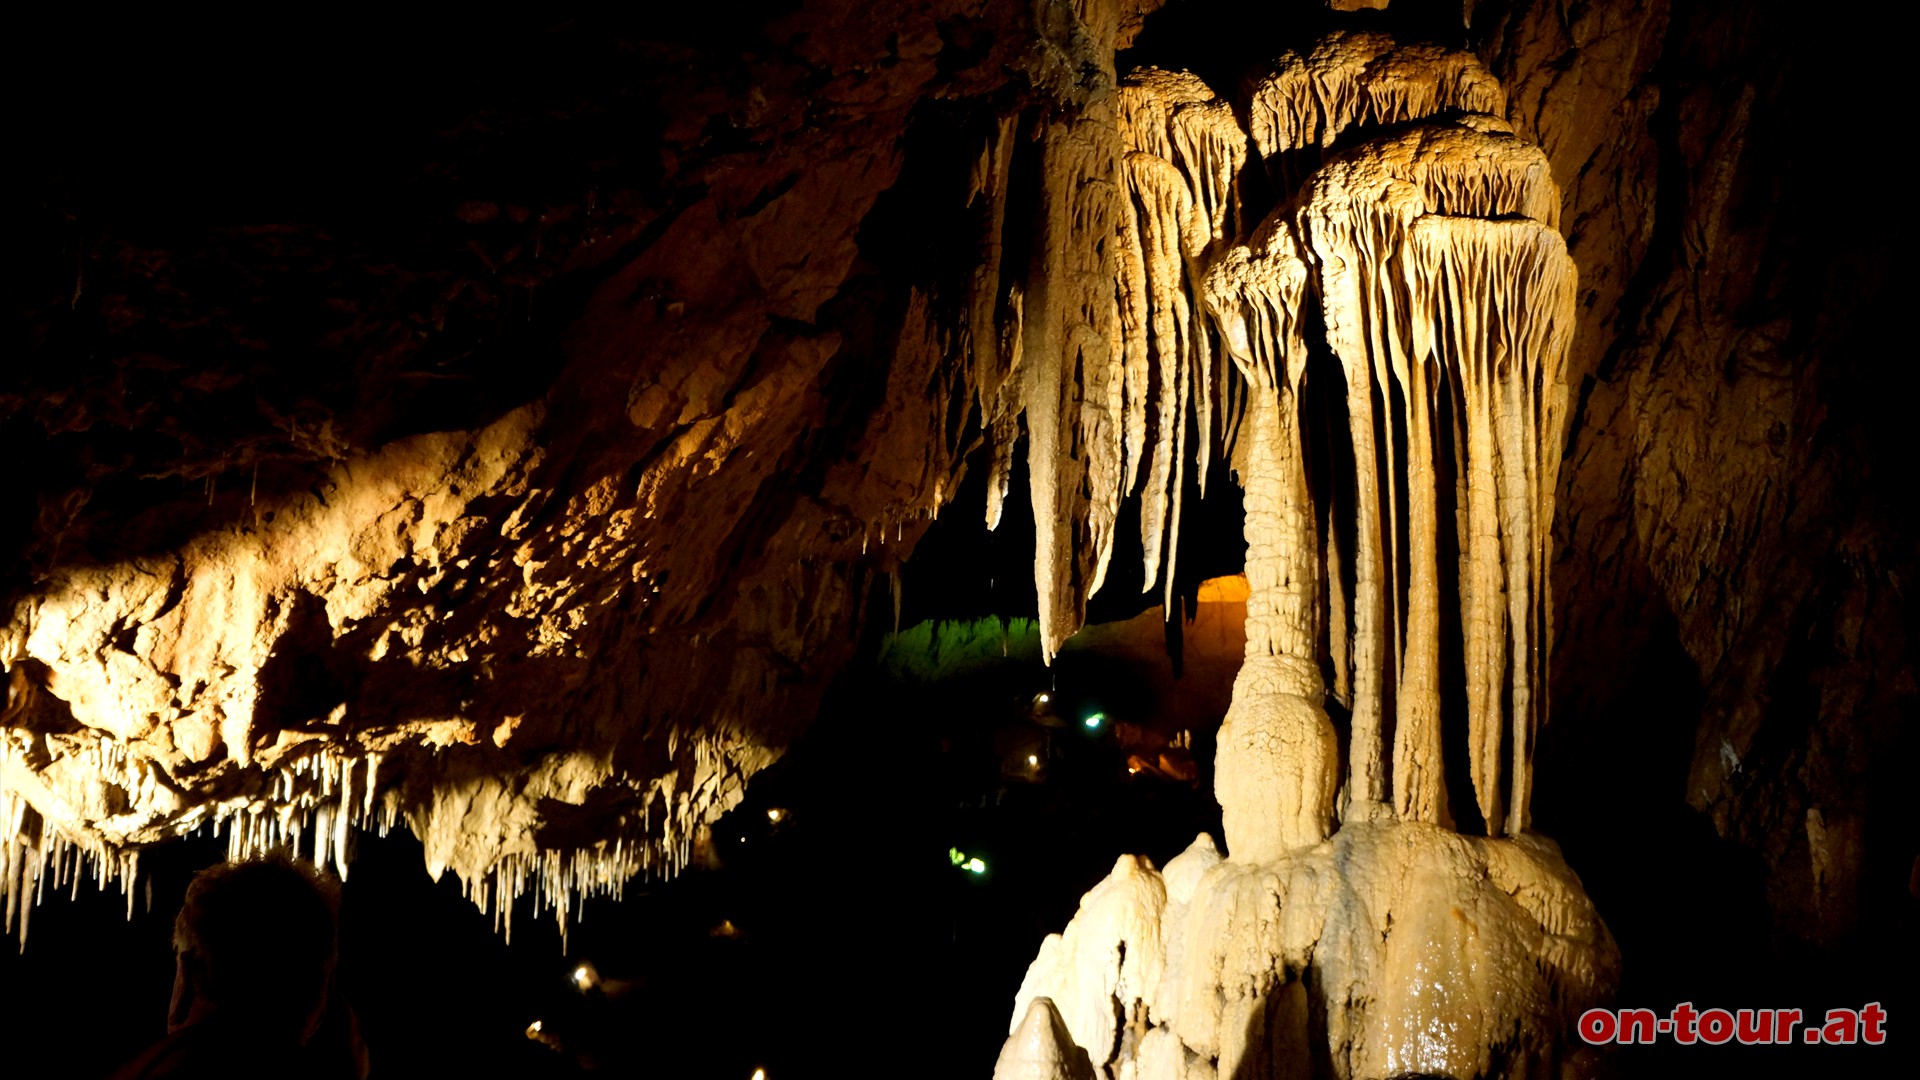 Etwa 25 km nördlich von Graz befindet sich die größte Tropfsteinhöhle Österreichs.